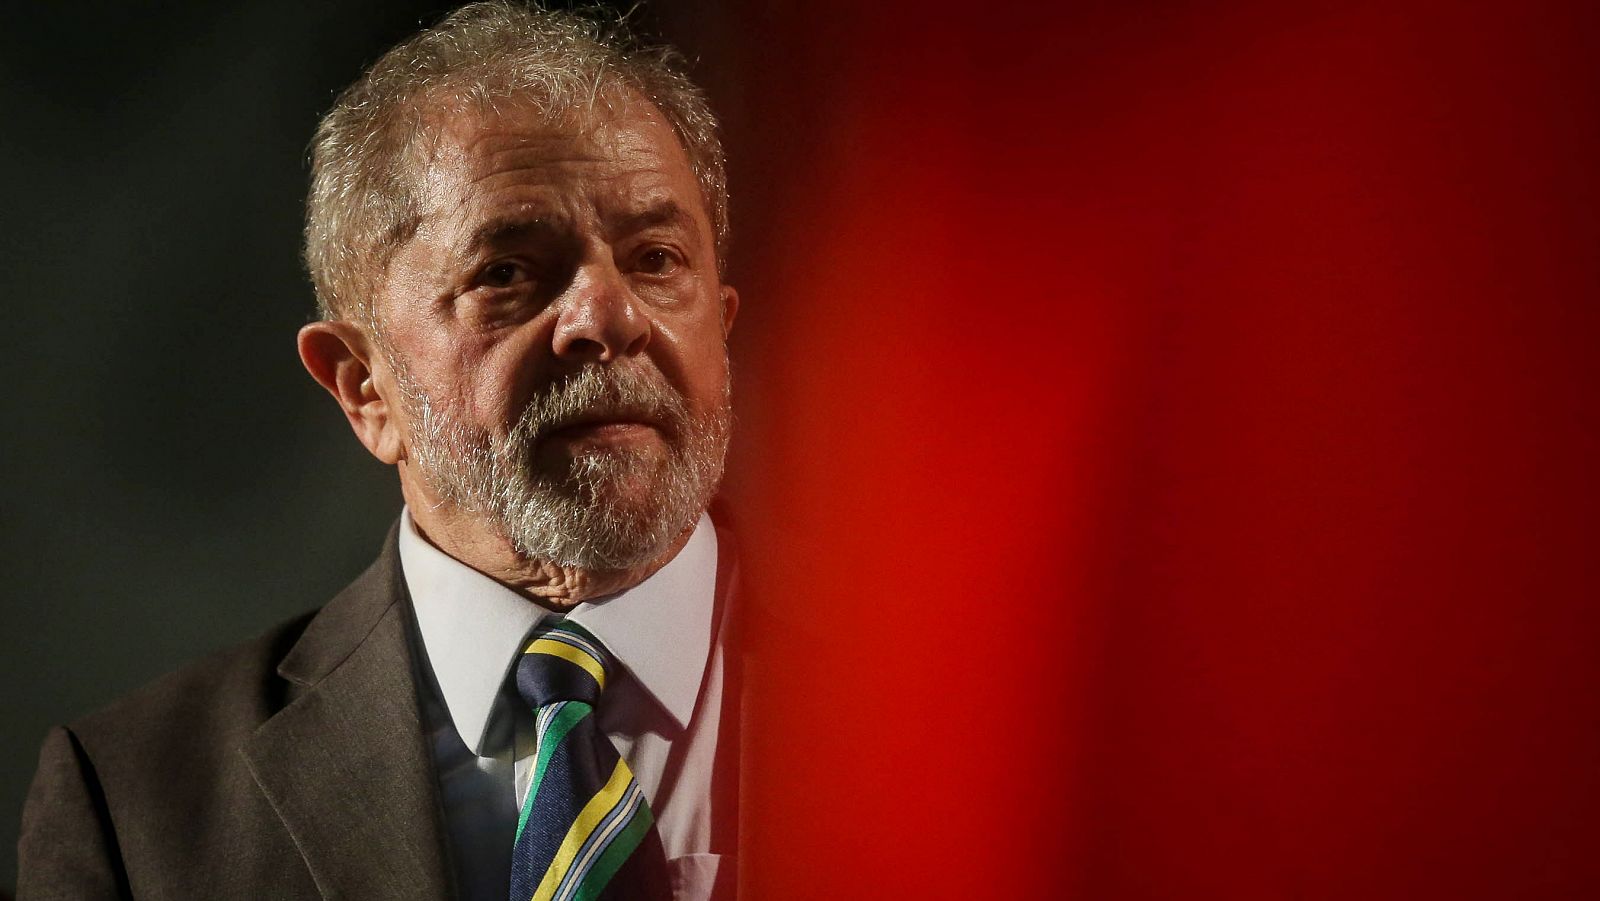 El expresidente brasileño Lula da Silva en una imagen del pasado mes de mayo.